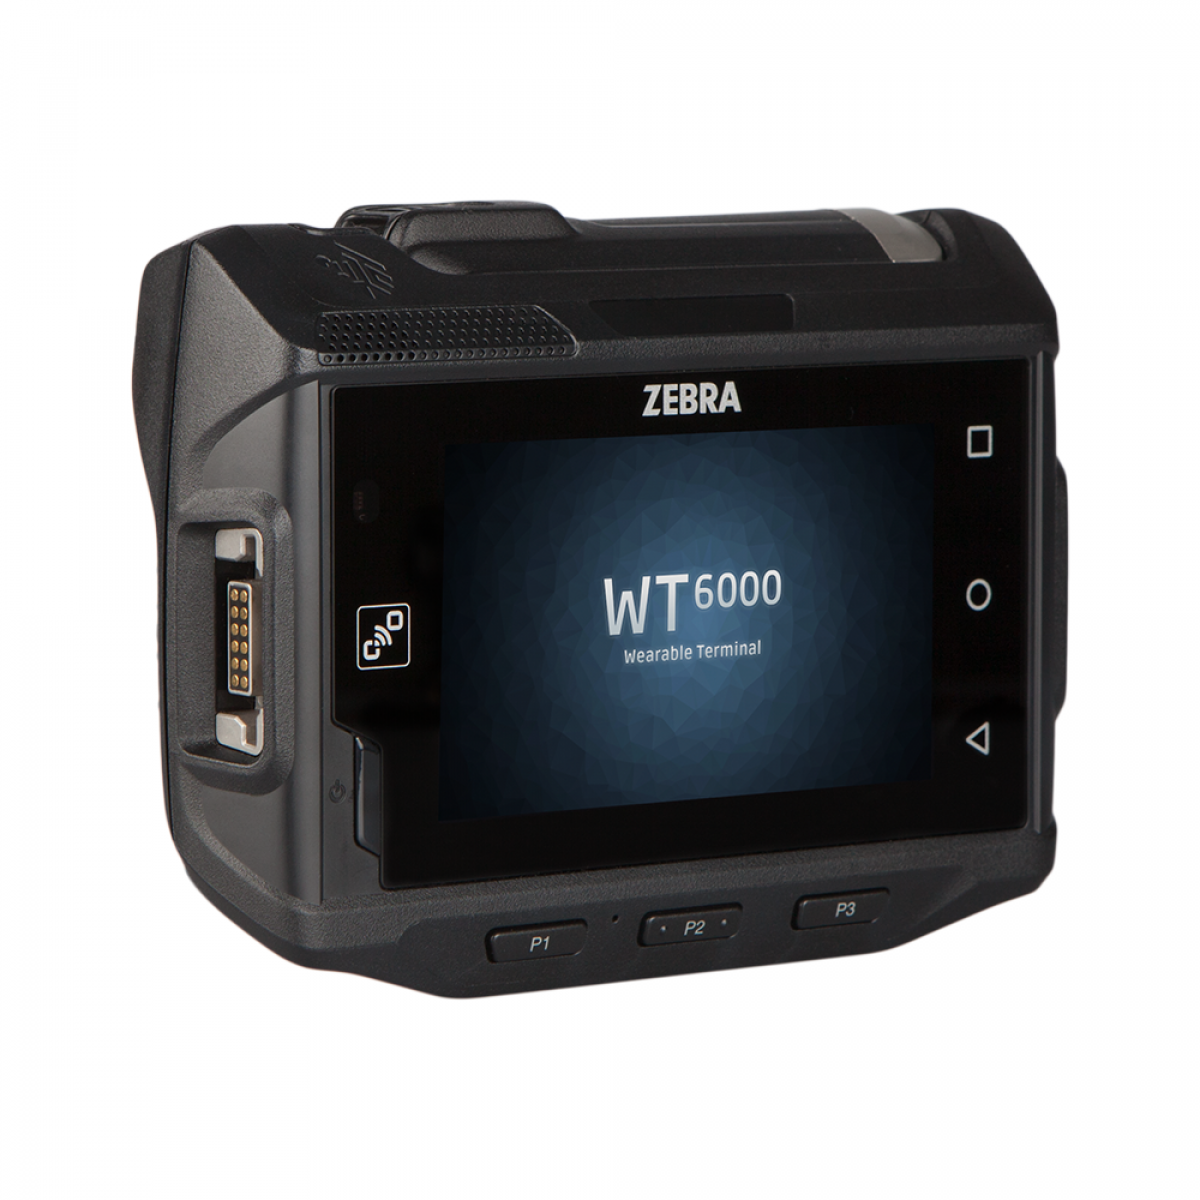 Zebra WT6000 arm-wearable device